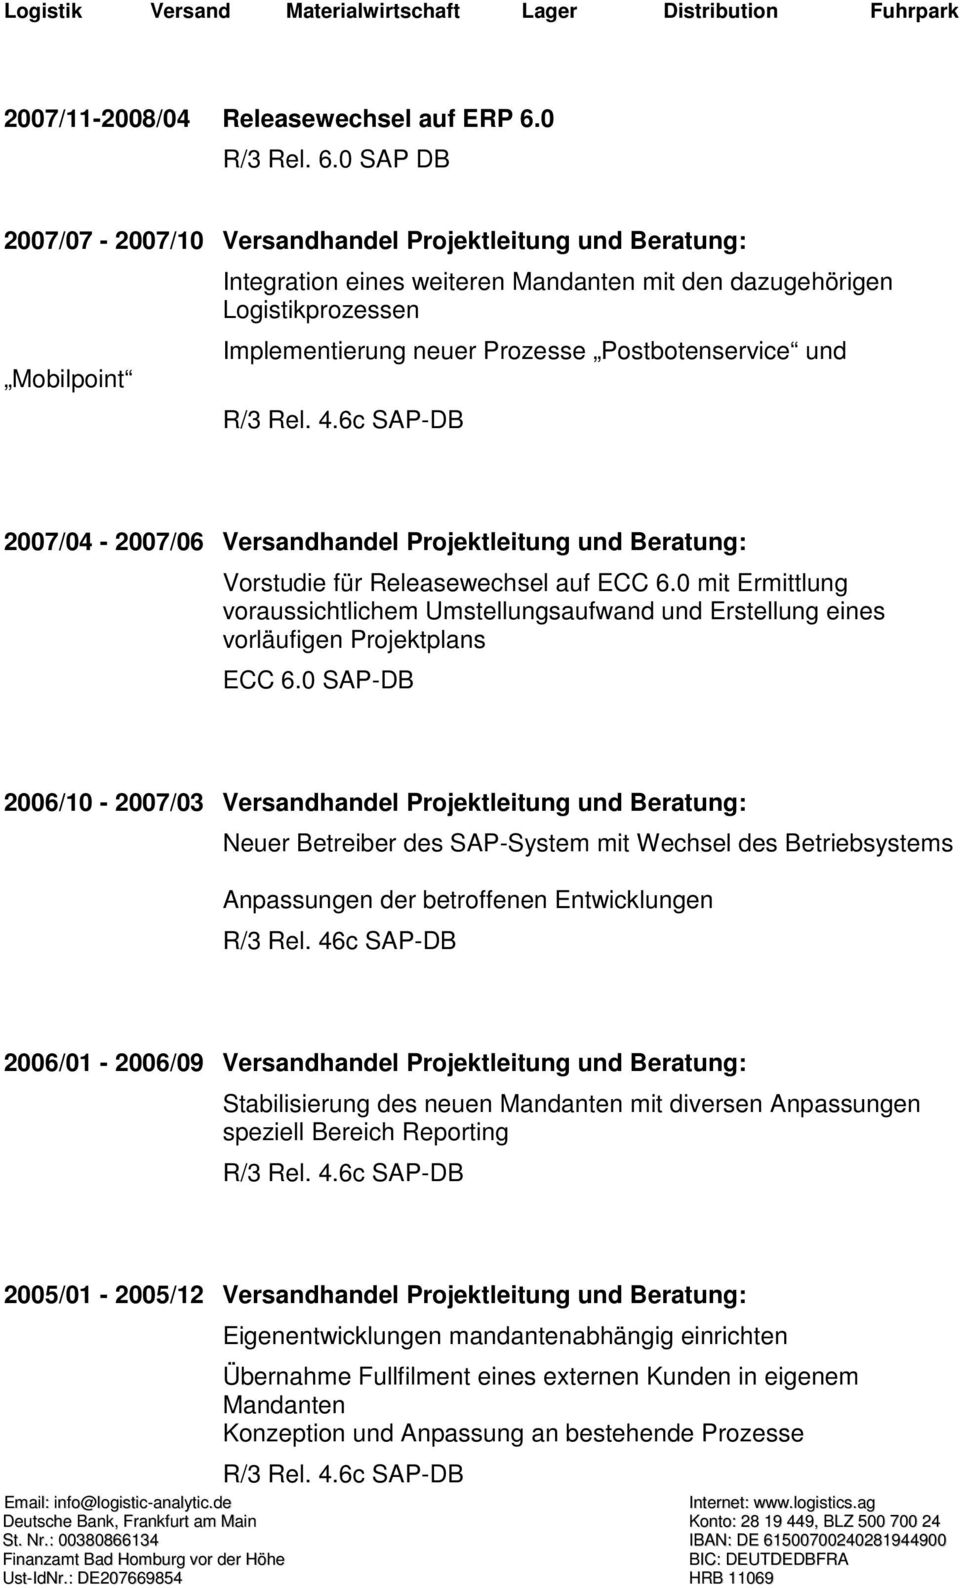 und 2007/04-2007/06 Versandhandel Projektleitung und Beratung: Vorstudie für Releasewechsel auf ECC 6.